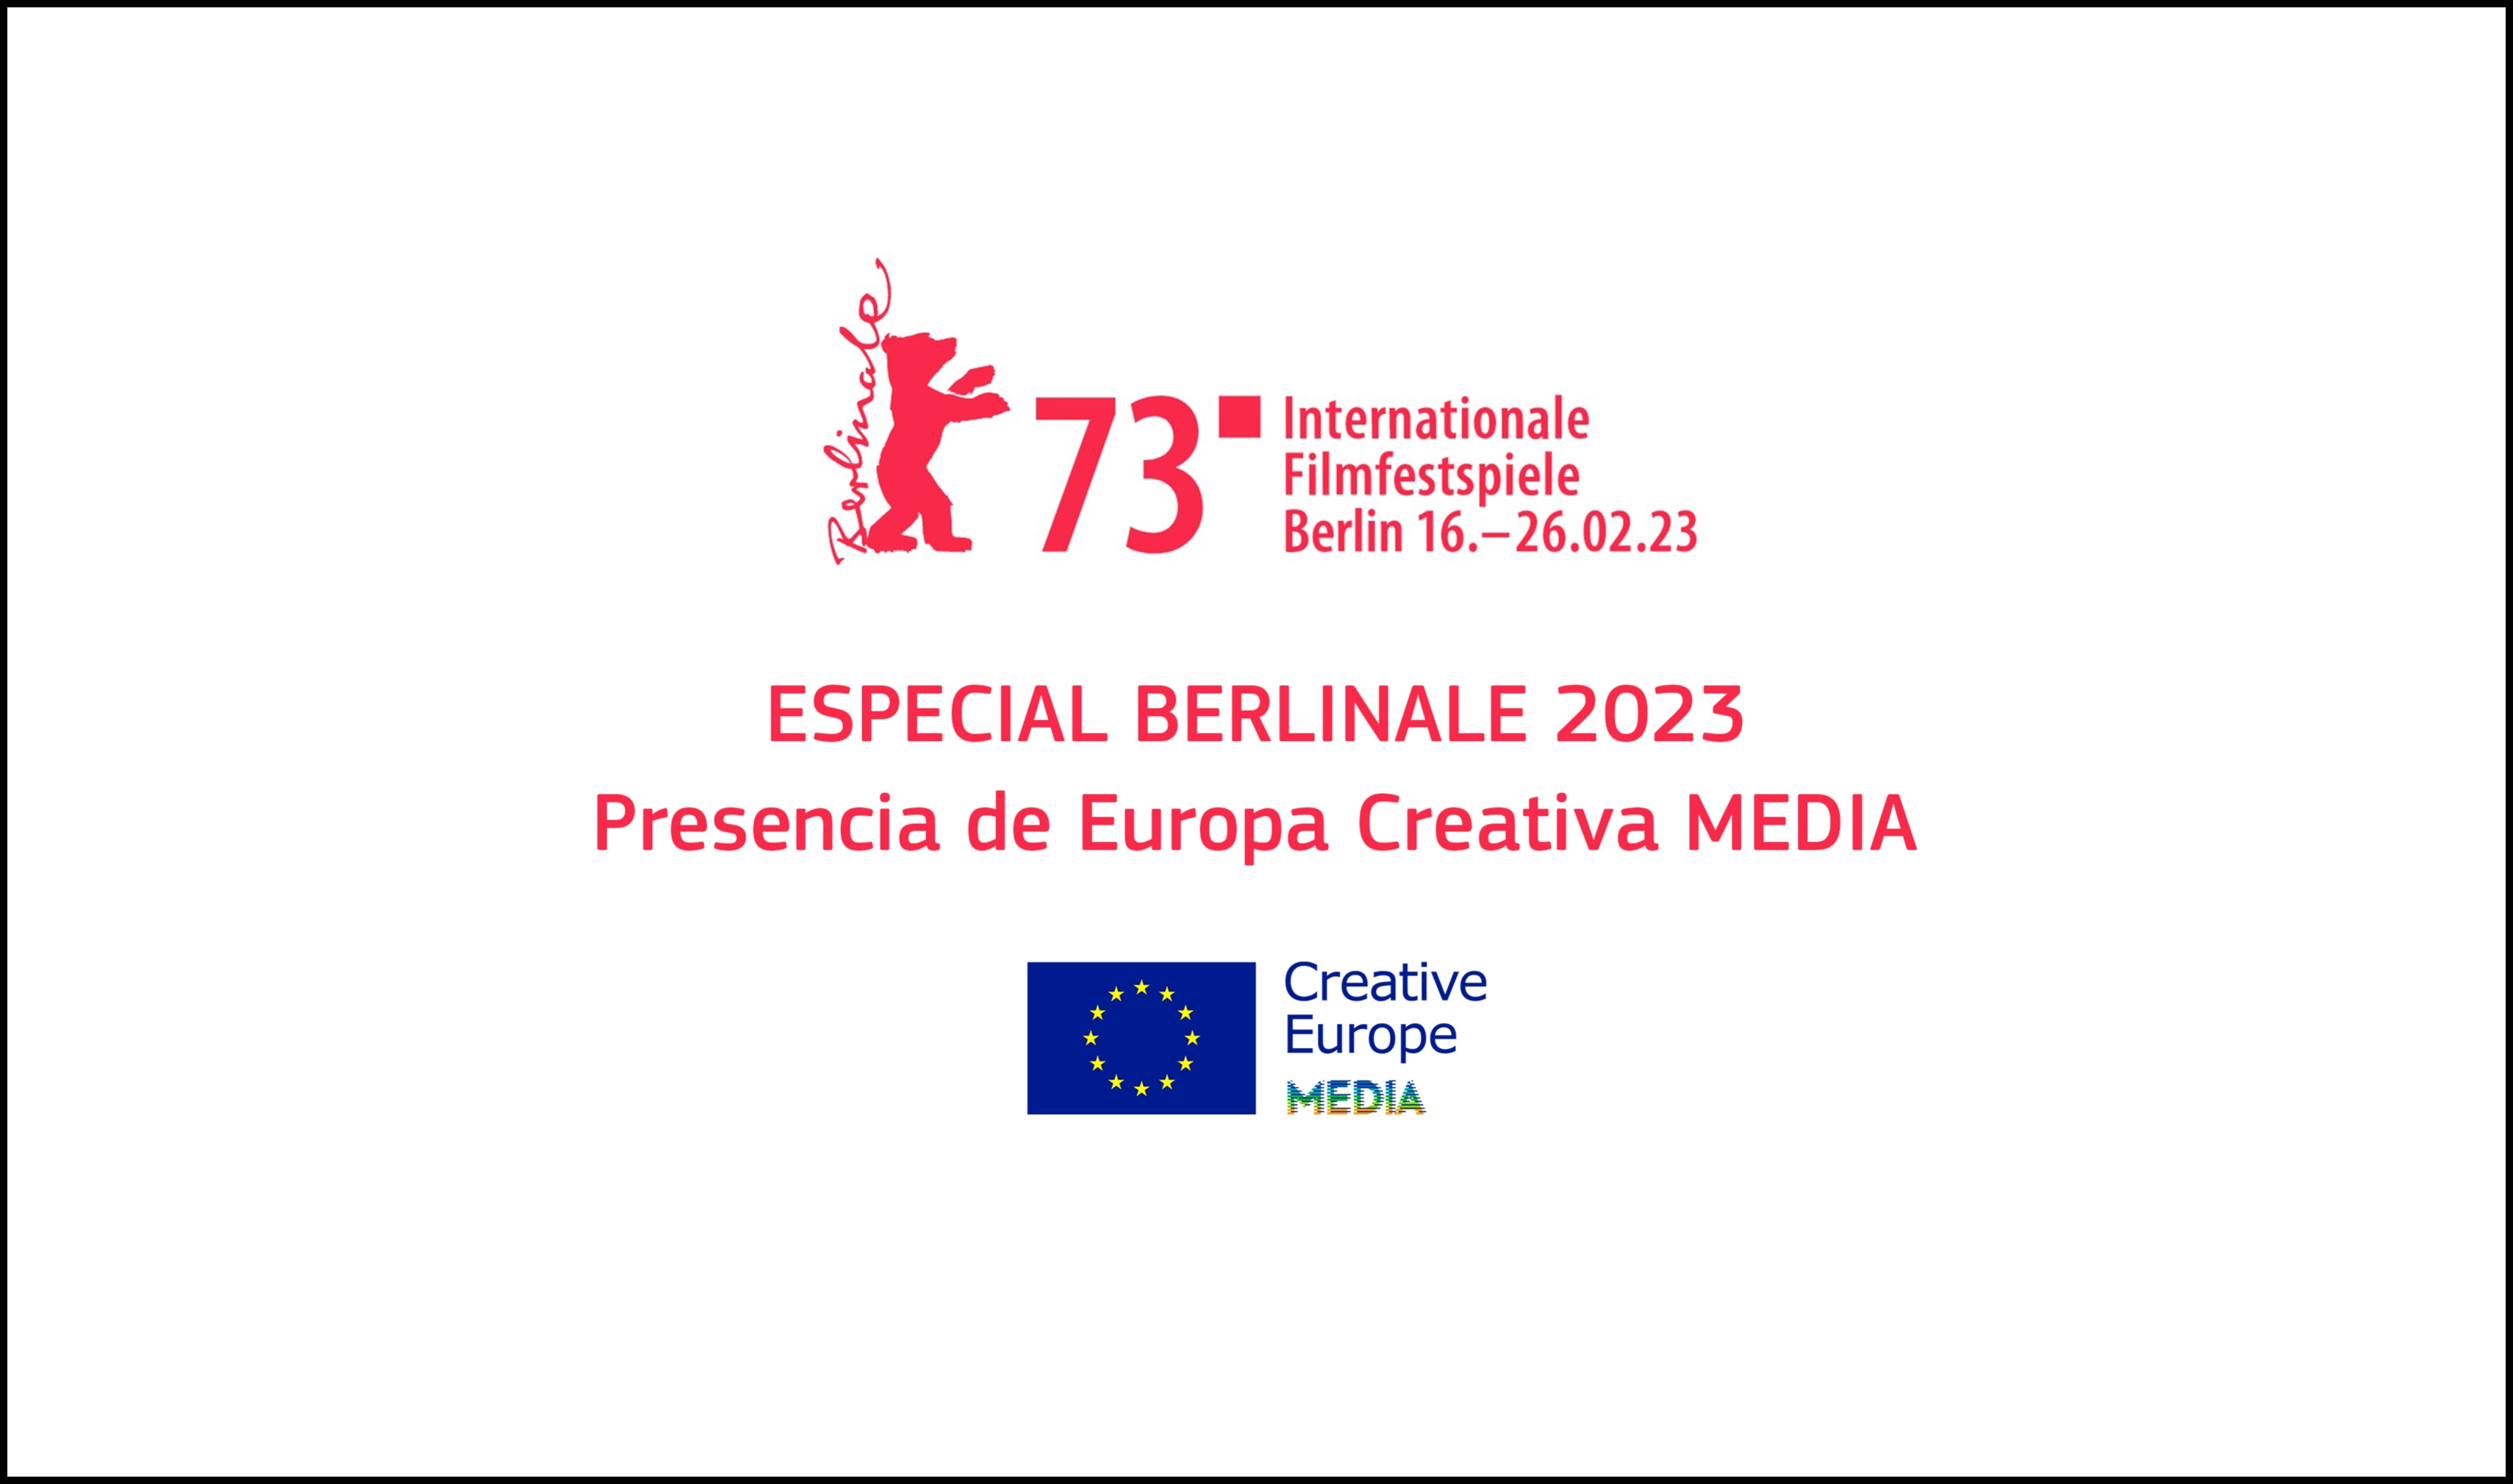 ESPECIAL BERLINALE 2023: Presencia de MEDIA en el mercado y en las secciones del festival